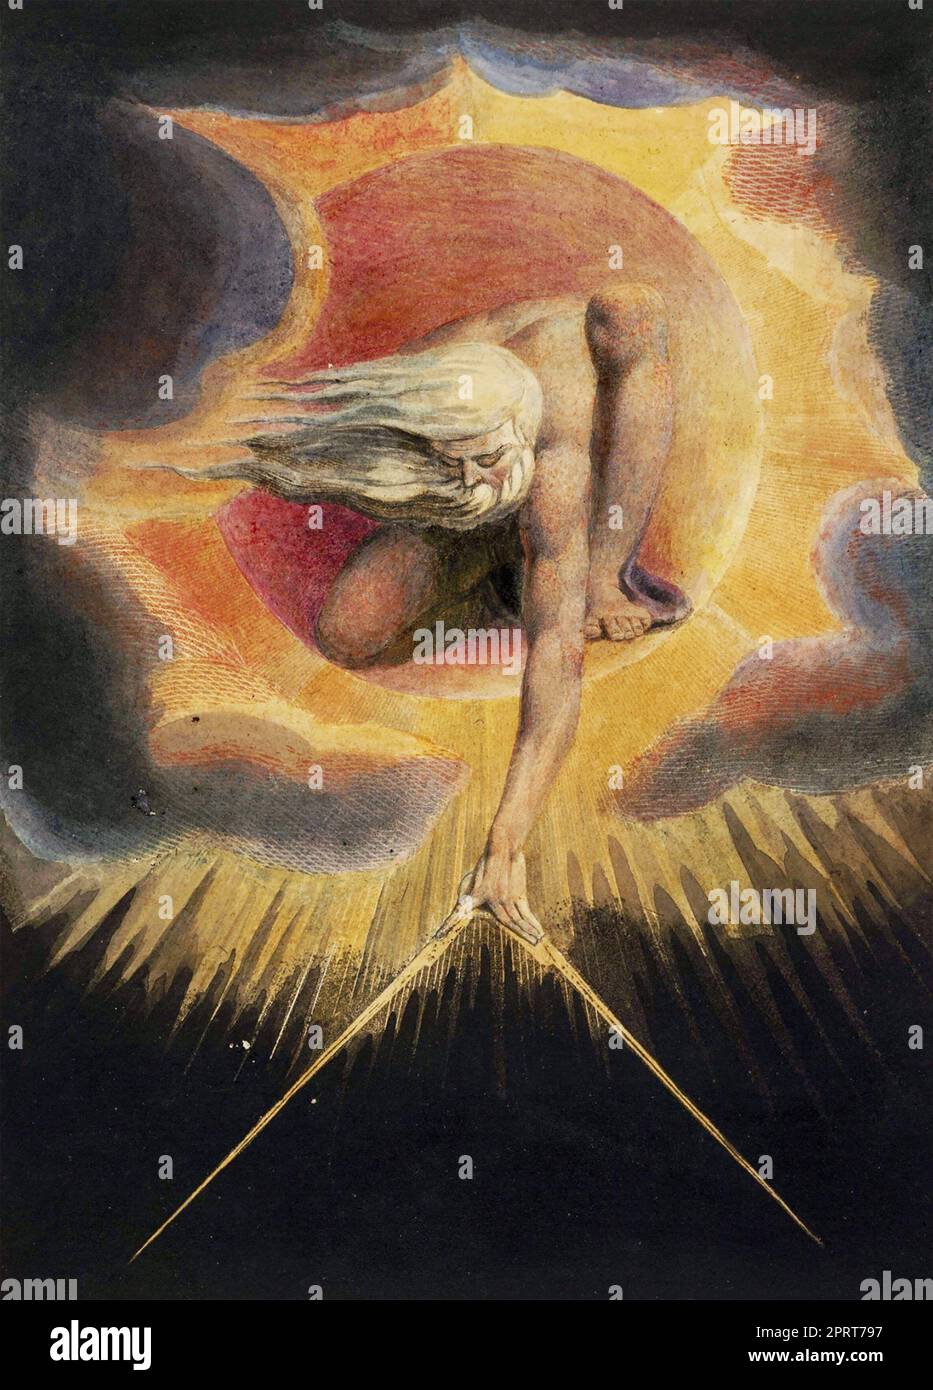 L'ANTICA ILLUSTRAZIONE DEI GIORNI 1794 di William Blake Foto Stock